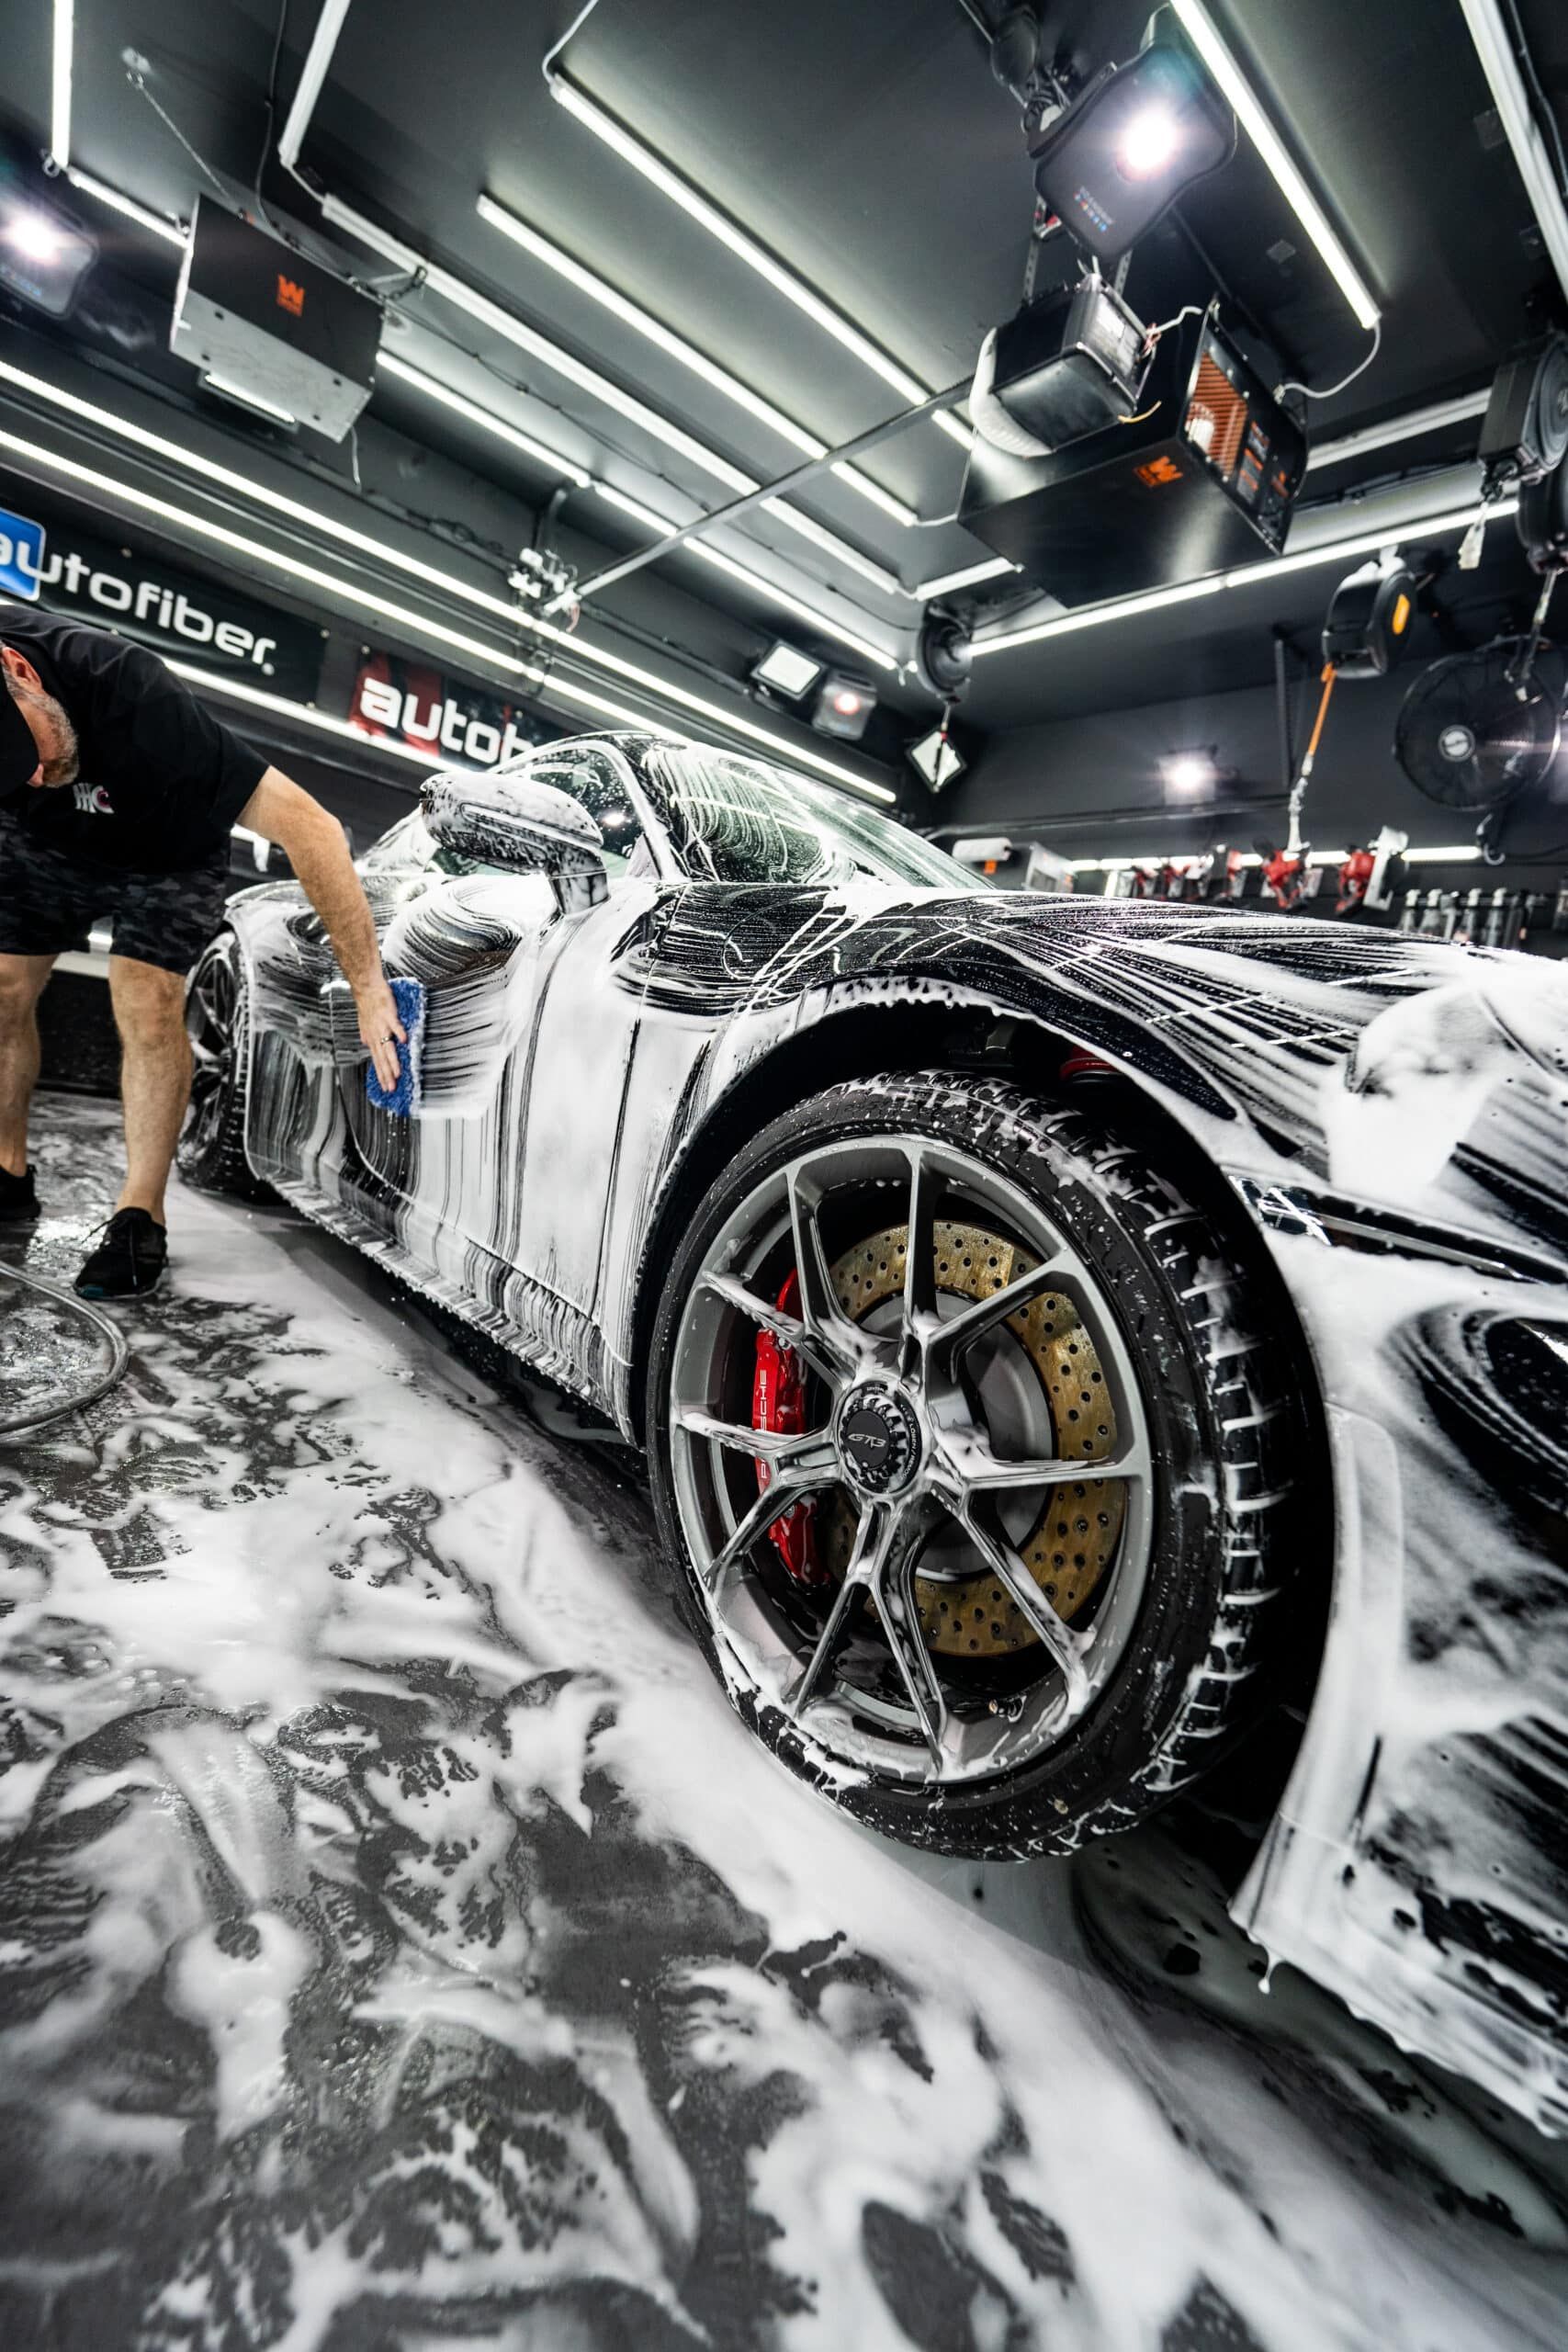 A man is washing a sports car in a garage.